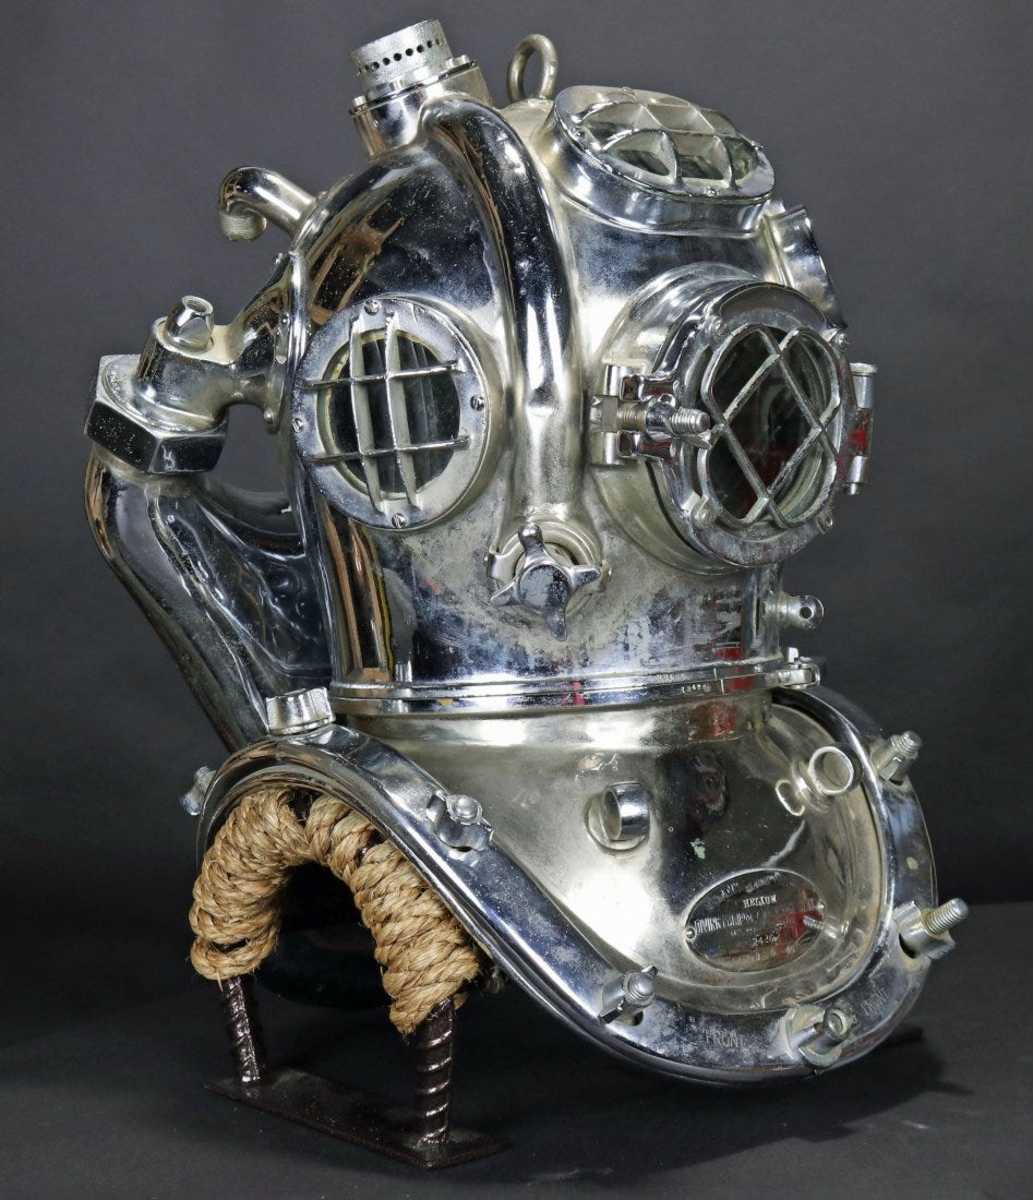 U.S. Navy Mark V mixed gas diving helmet